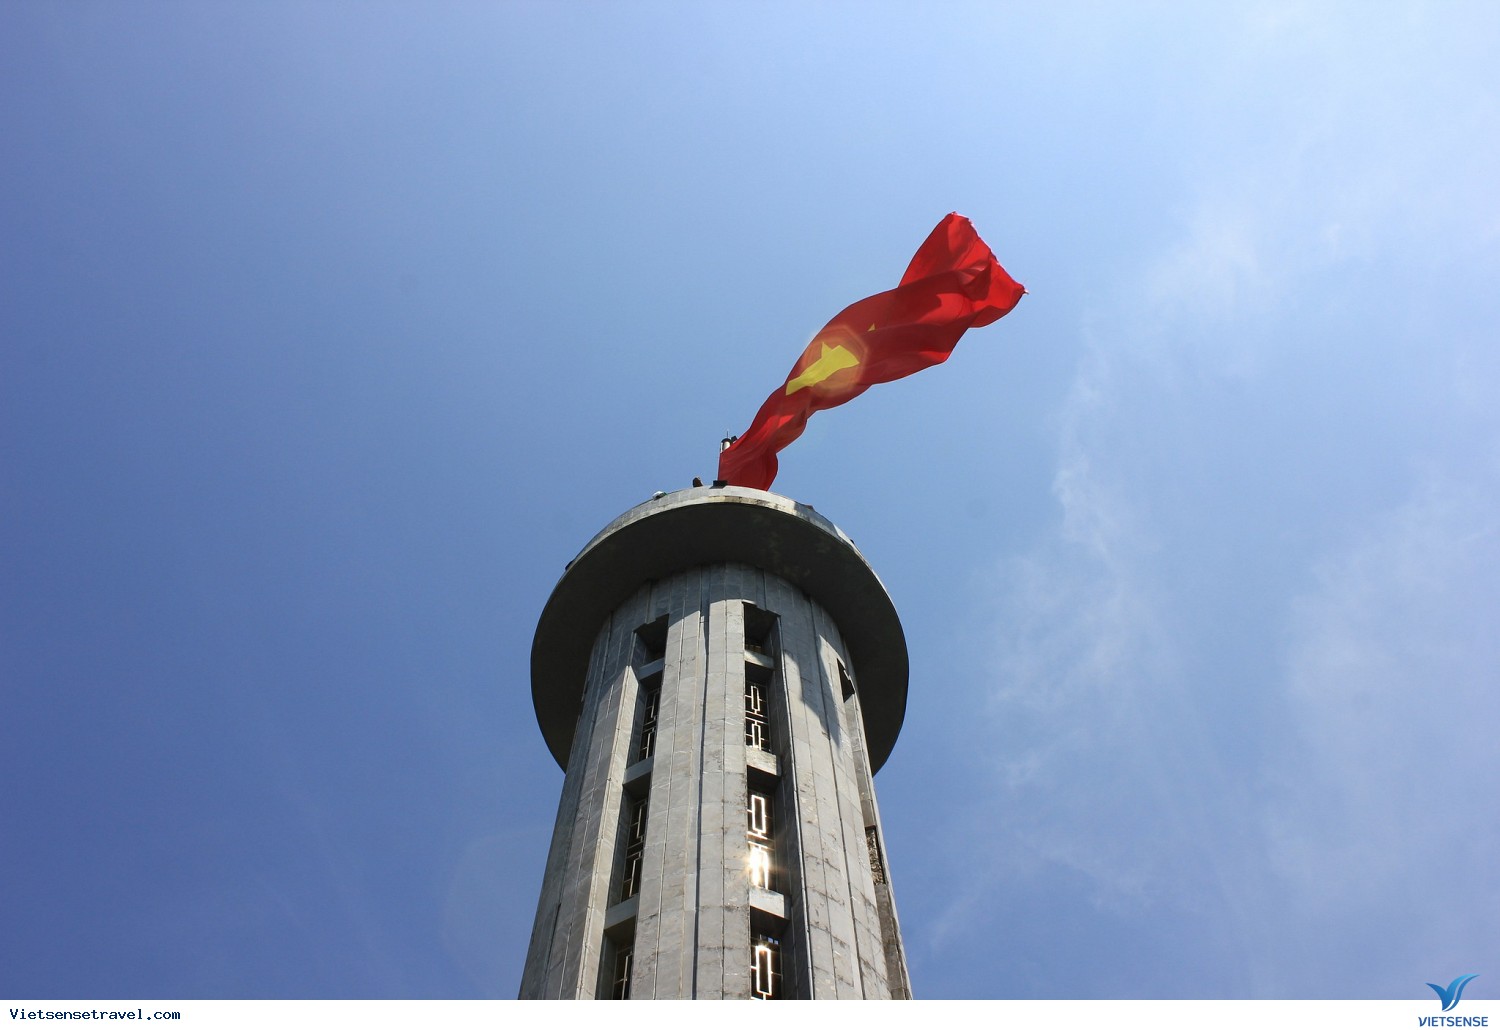 Cột cờ Lũng Cú là biểu tượng vững chắc của sự độc lập và tự do của dân tộc Việt Nam. Hình ảnh của cột cờ được chụp bởi những nhiếp ảnh gia tài năng sẽ giúp người xem cảm nhận được giá trị lịch sử và tâm hồn cách mạng của đất nước. Hãy cùng xem hình ảnh để trân quý và cảm nhận rõ nét hơn giá trị của biểu tượng lịch sử này.